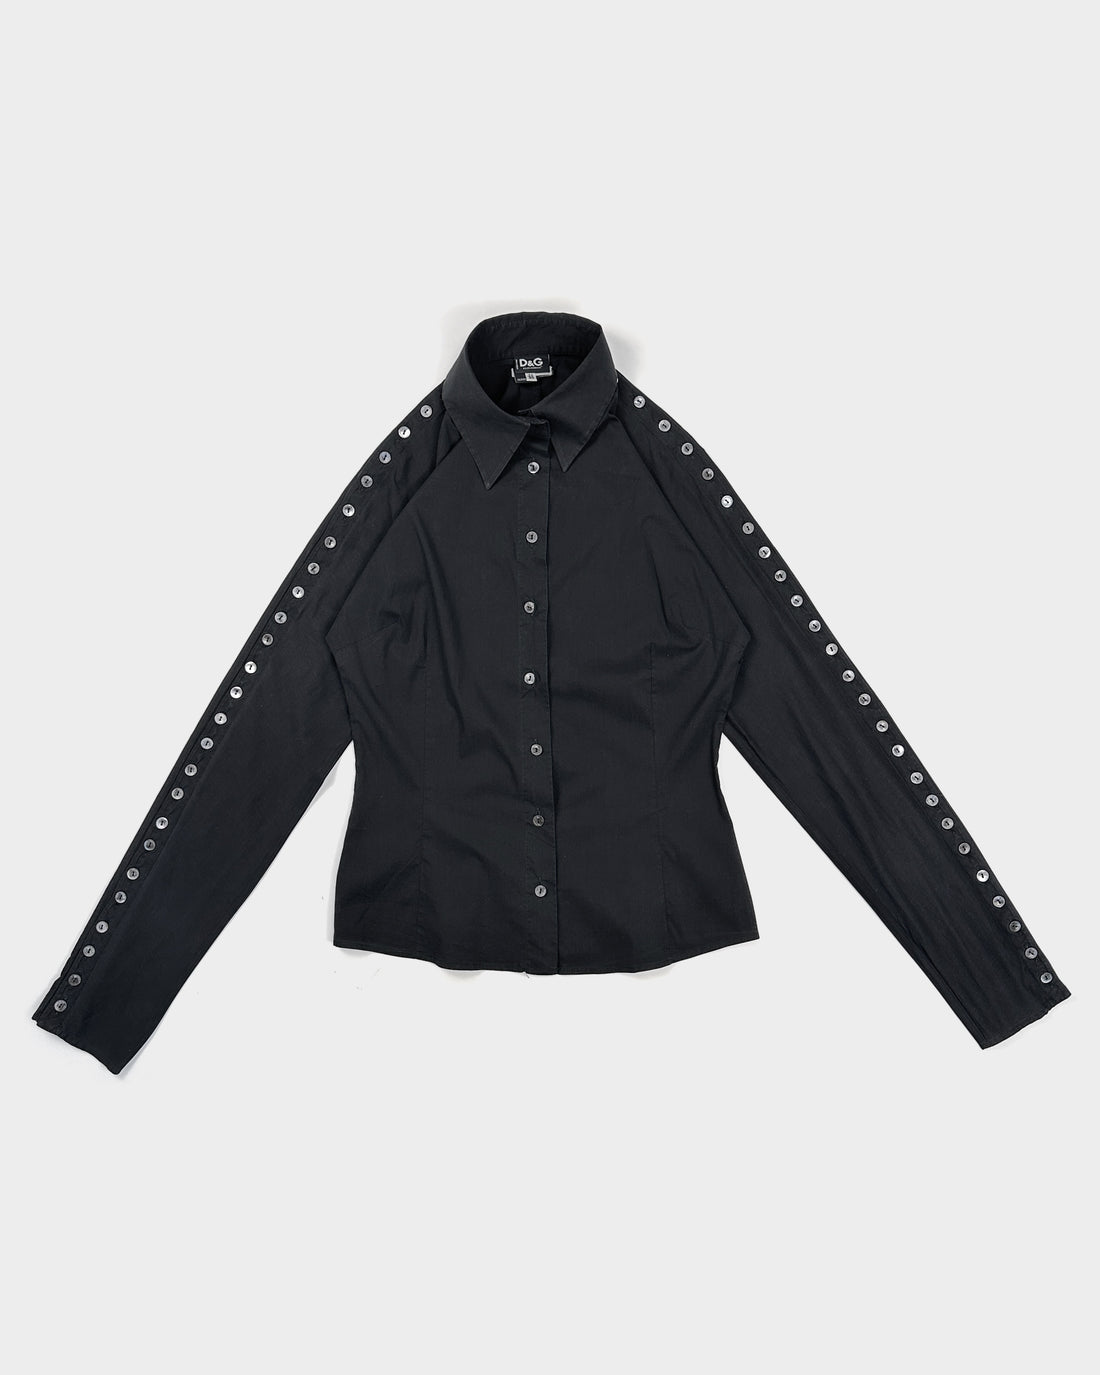 Dolce & Gabbana 60 Buttons Black Shirt 2000's